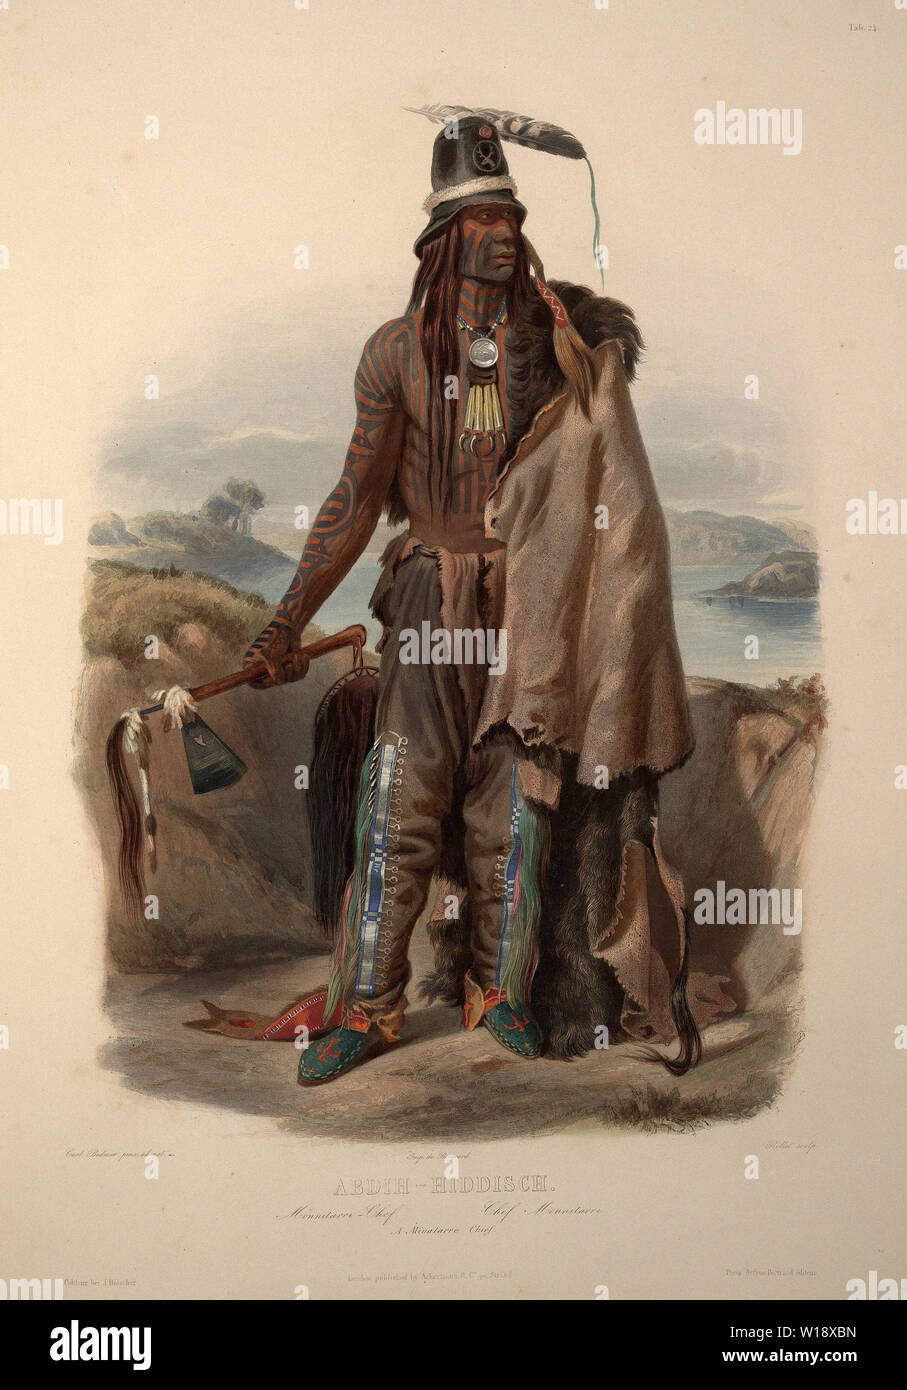 Karl Bodmer - Abdih Hiddisch Minatarre Chief Plate 24 Volume 1 Travels Interior North 1834 Stock Photo